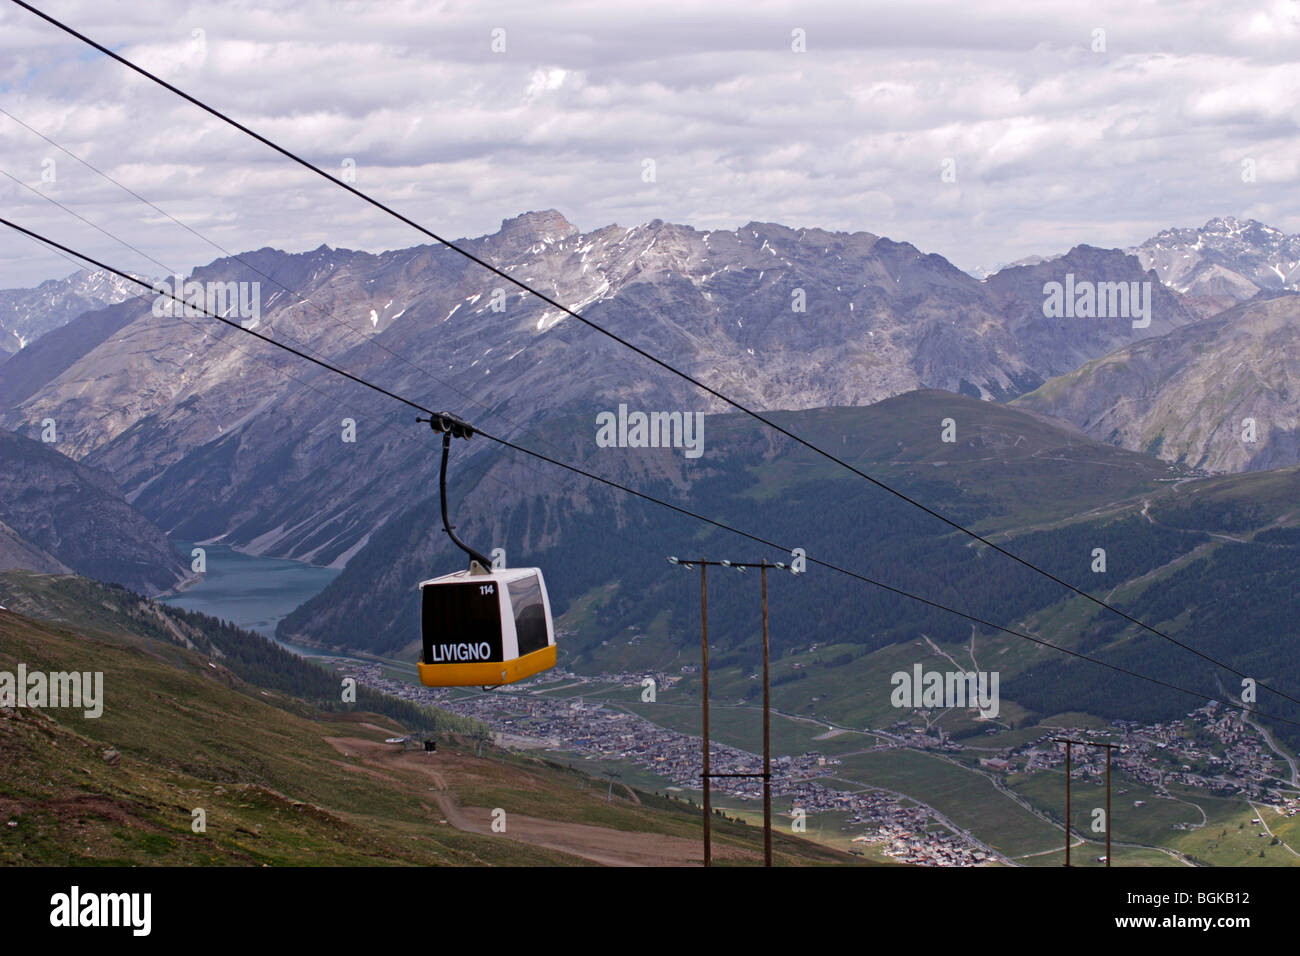 Cable lift to Carosello 3000 Livingo, Italy Stock Photo